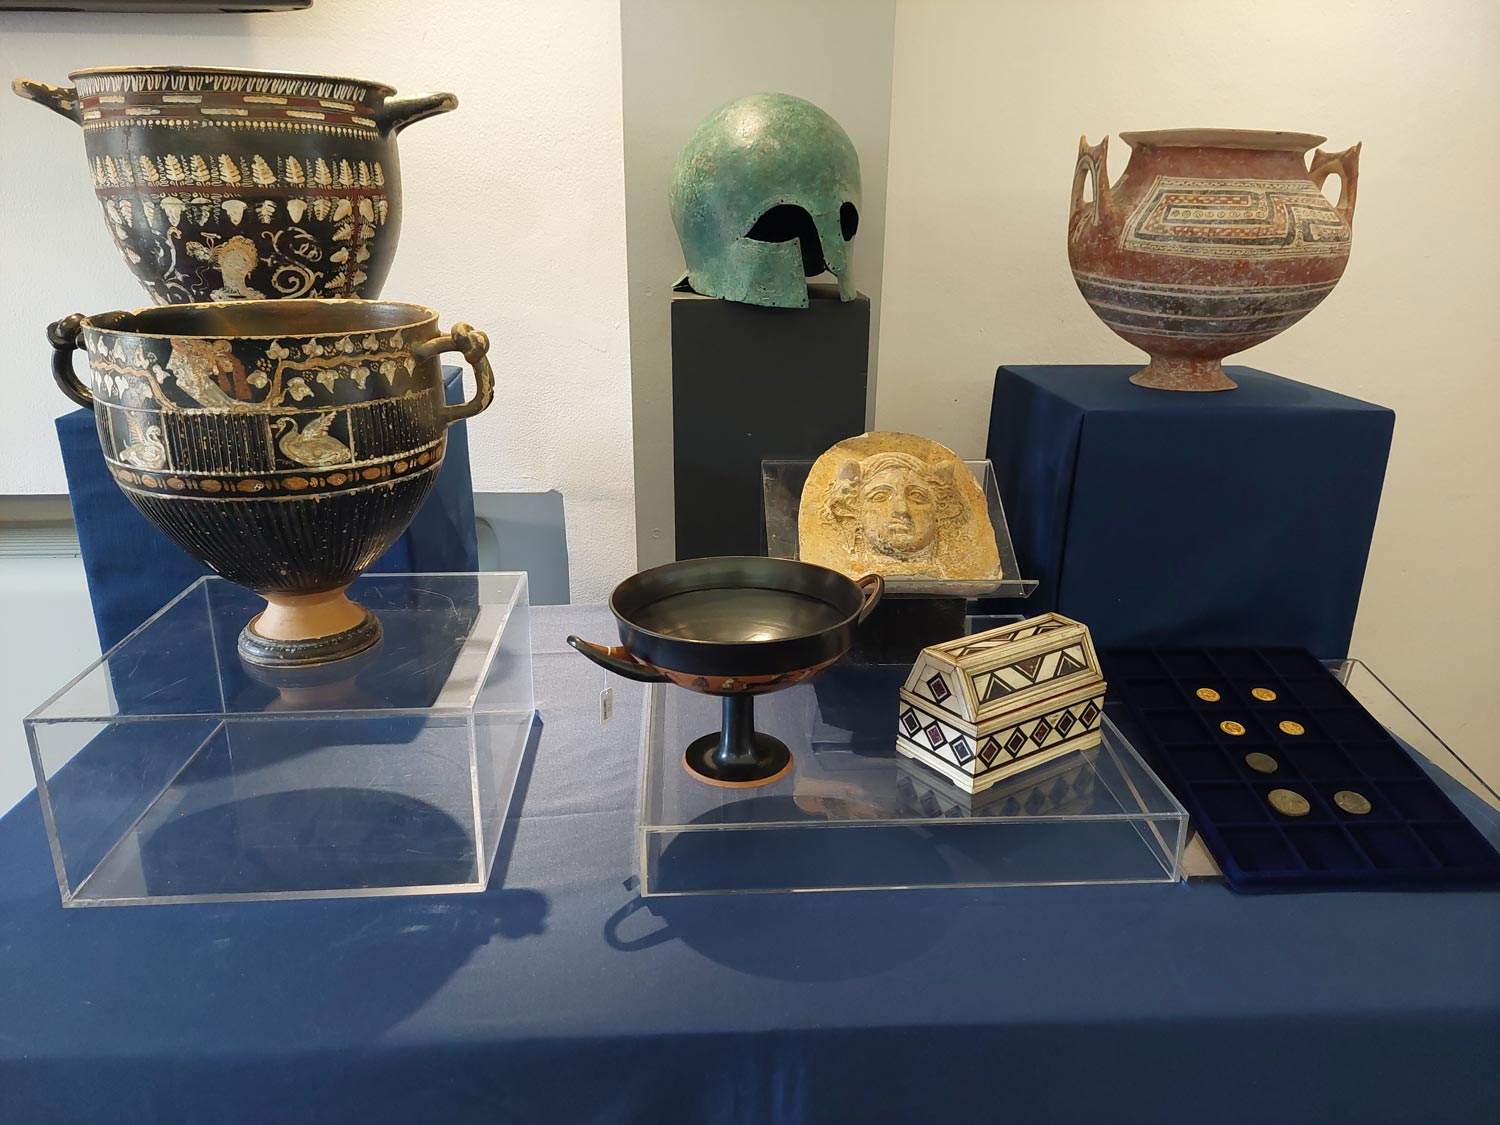 L'Allemagne restitue à l'Italie 14 biens culturels volés, dont certains se trouvaient dans des musées